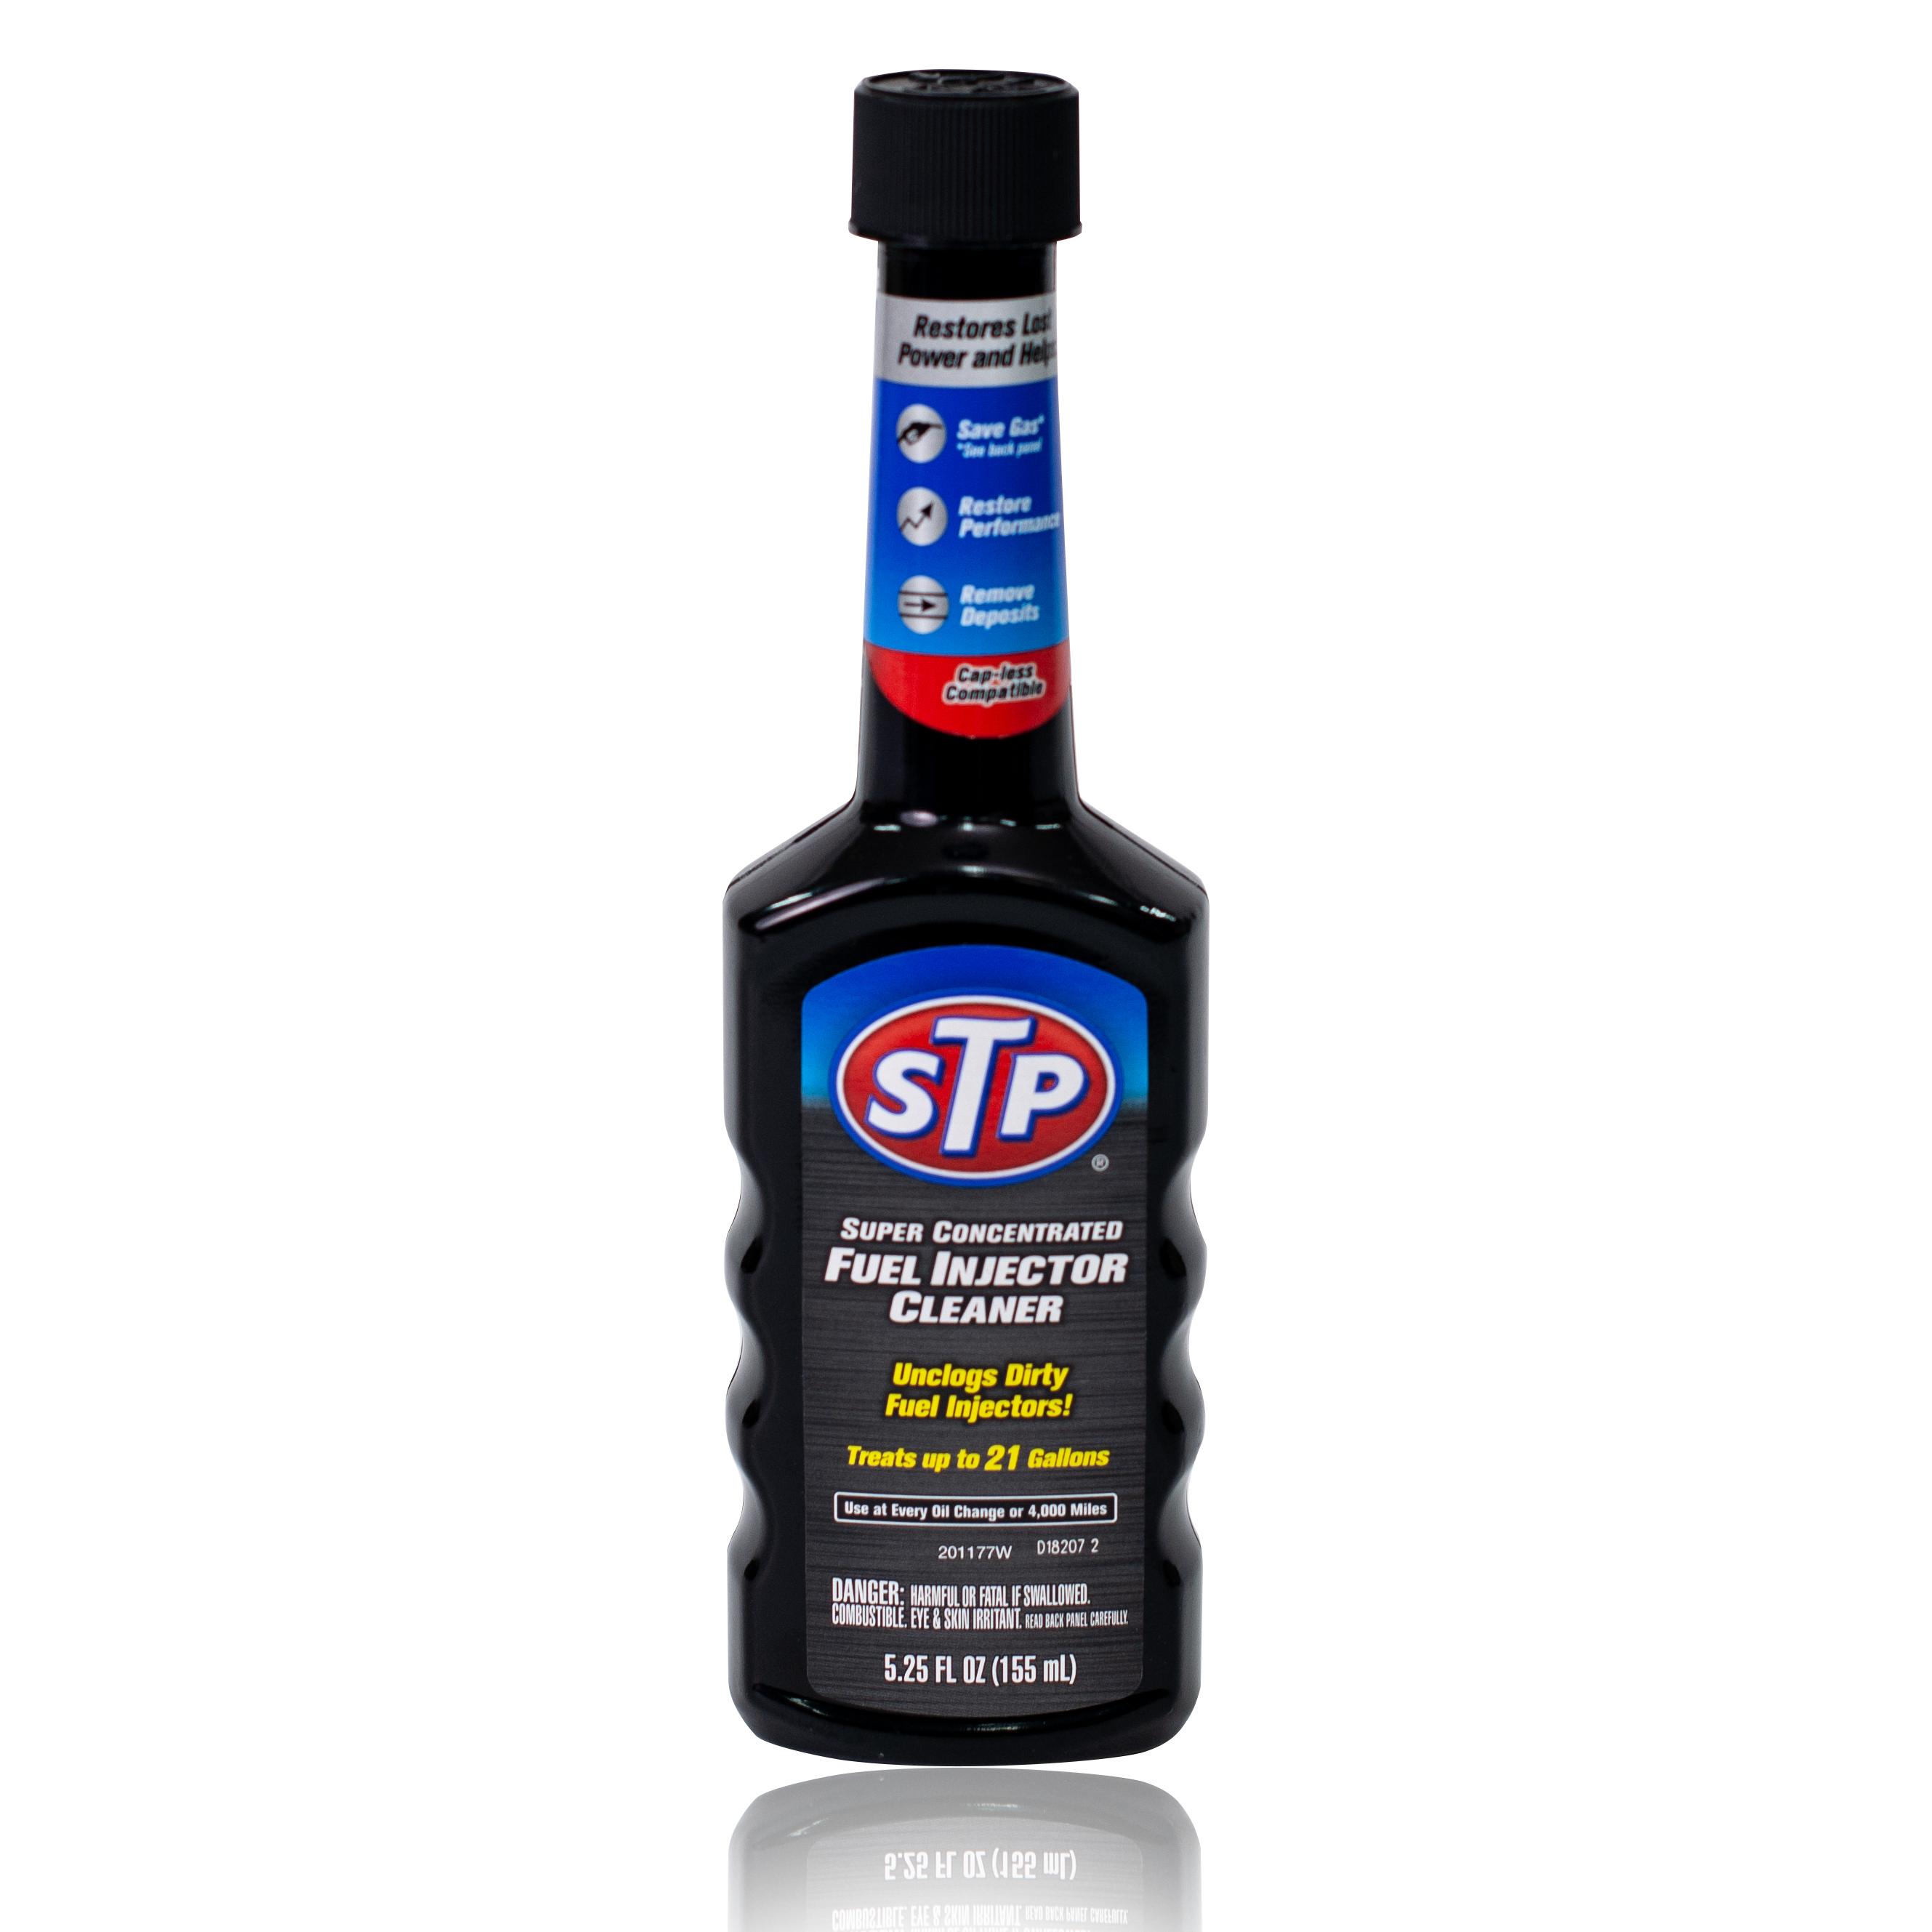 STP FUEL INJECTOR CLEANER น้ำยาล้างหัวฉีด น้ำยาทำความสะอาดหัวฉีด เบนซิน (สูตรเข้มข้น) รุ่น 78575/1 ขนาด 155 ml.